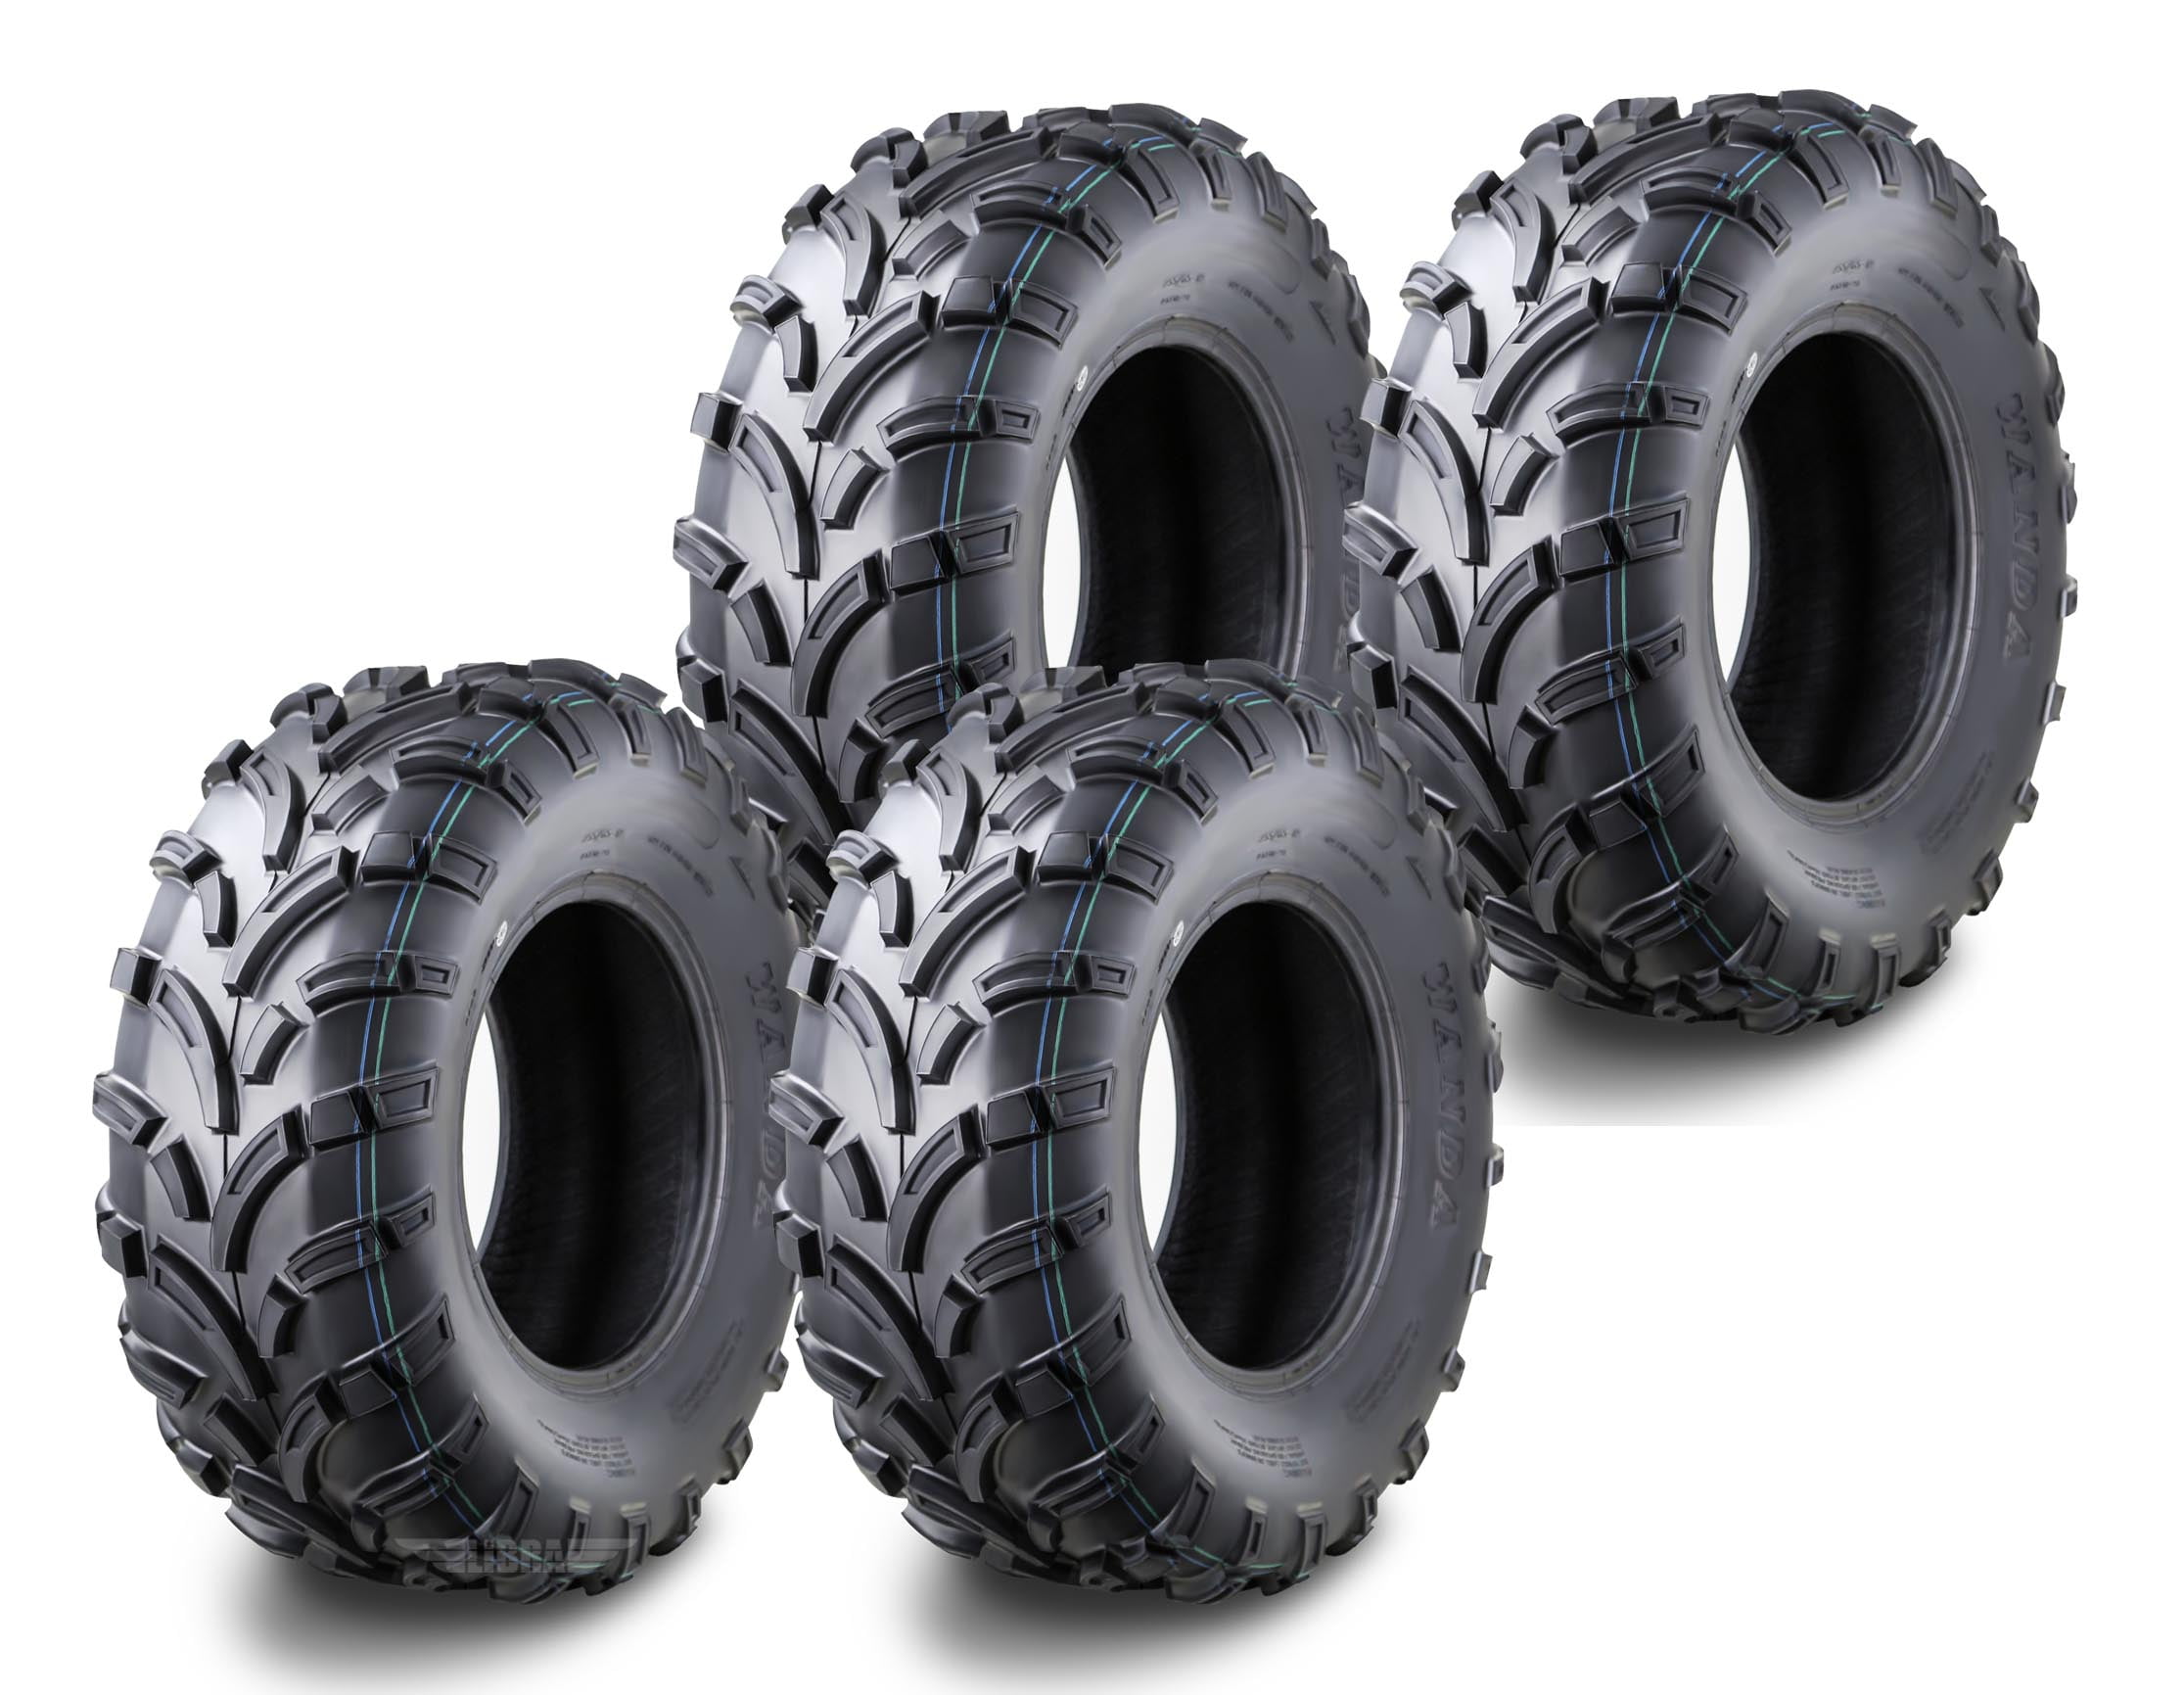 Set of 4 WANDA ATV tires 25x8-12 25x8x12 Front & 26x10-12 26x10x12 Rear 6PR P350 